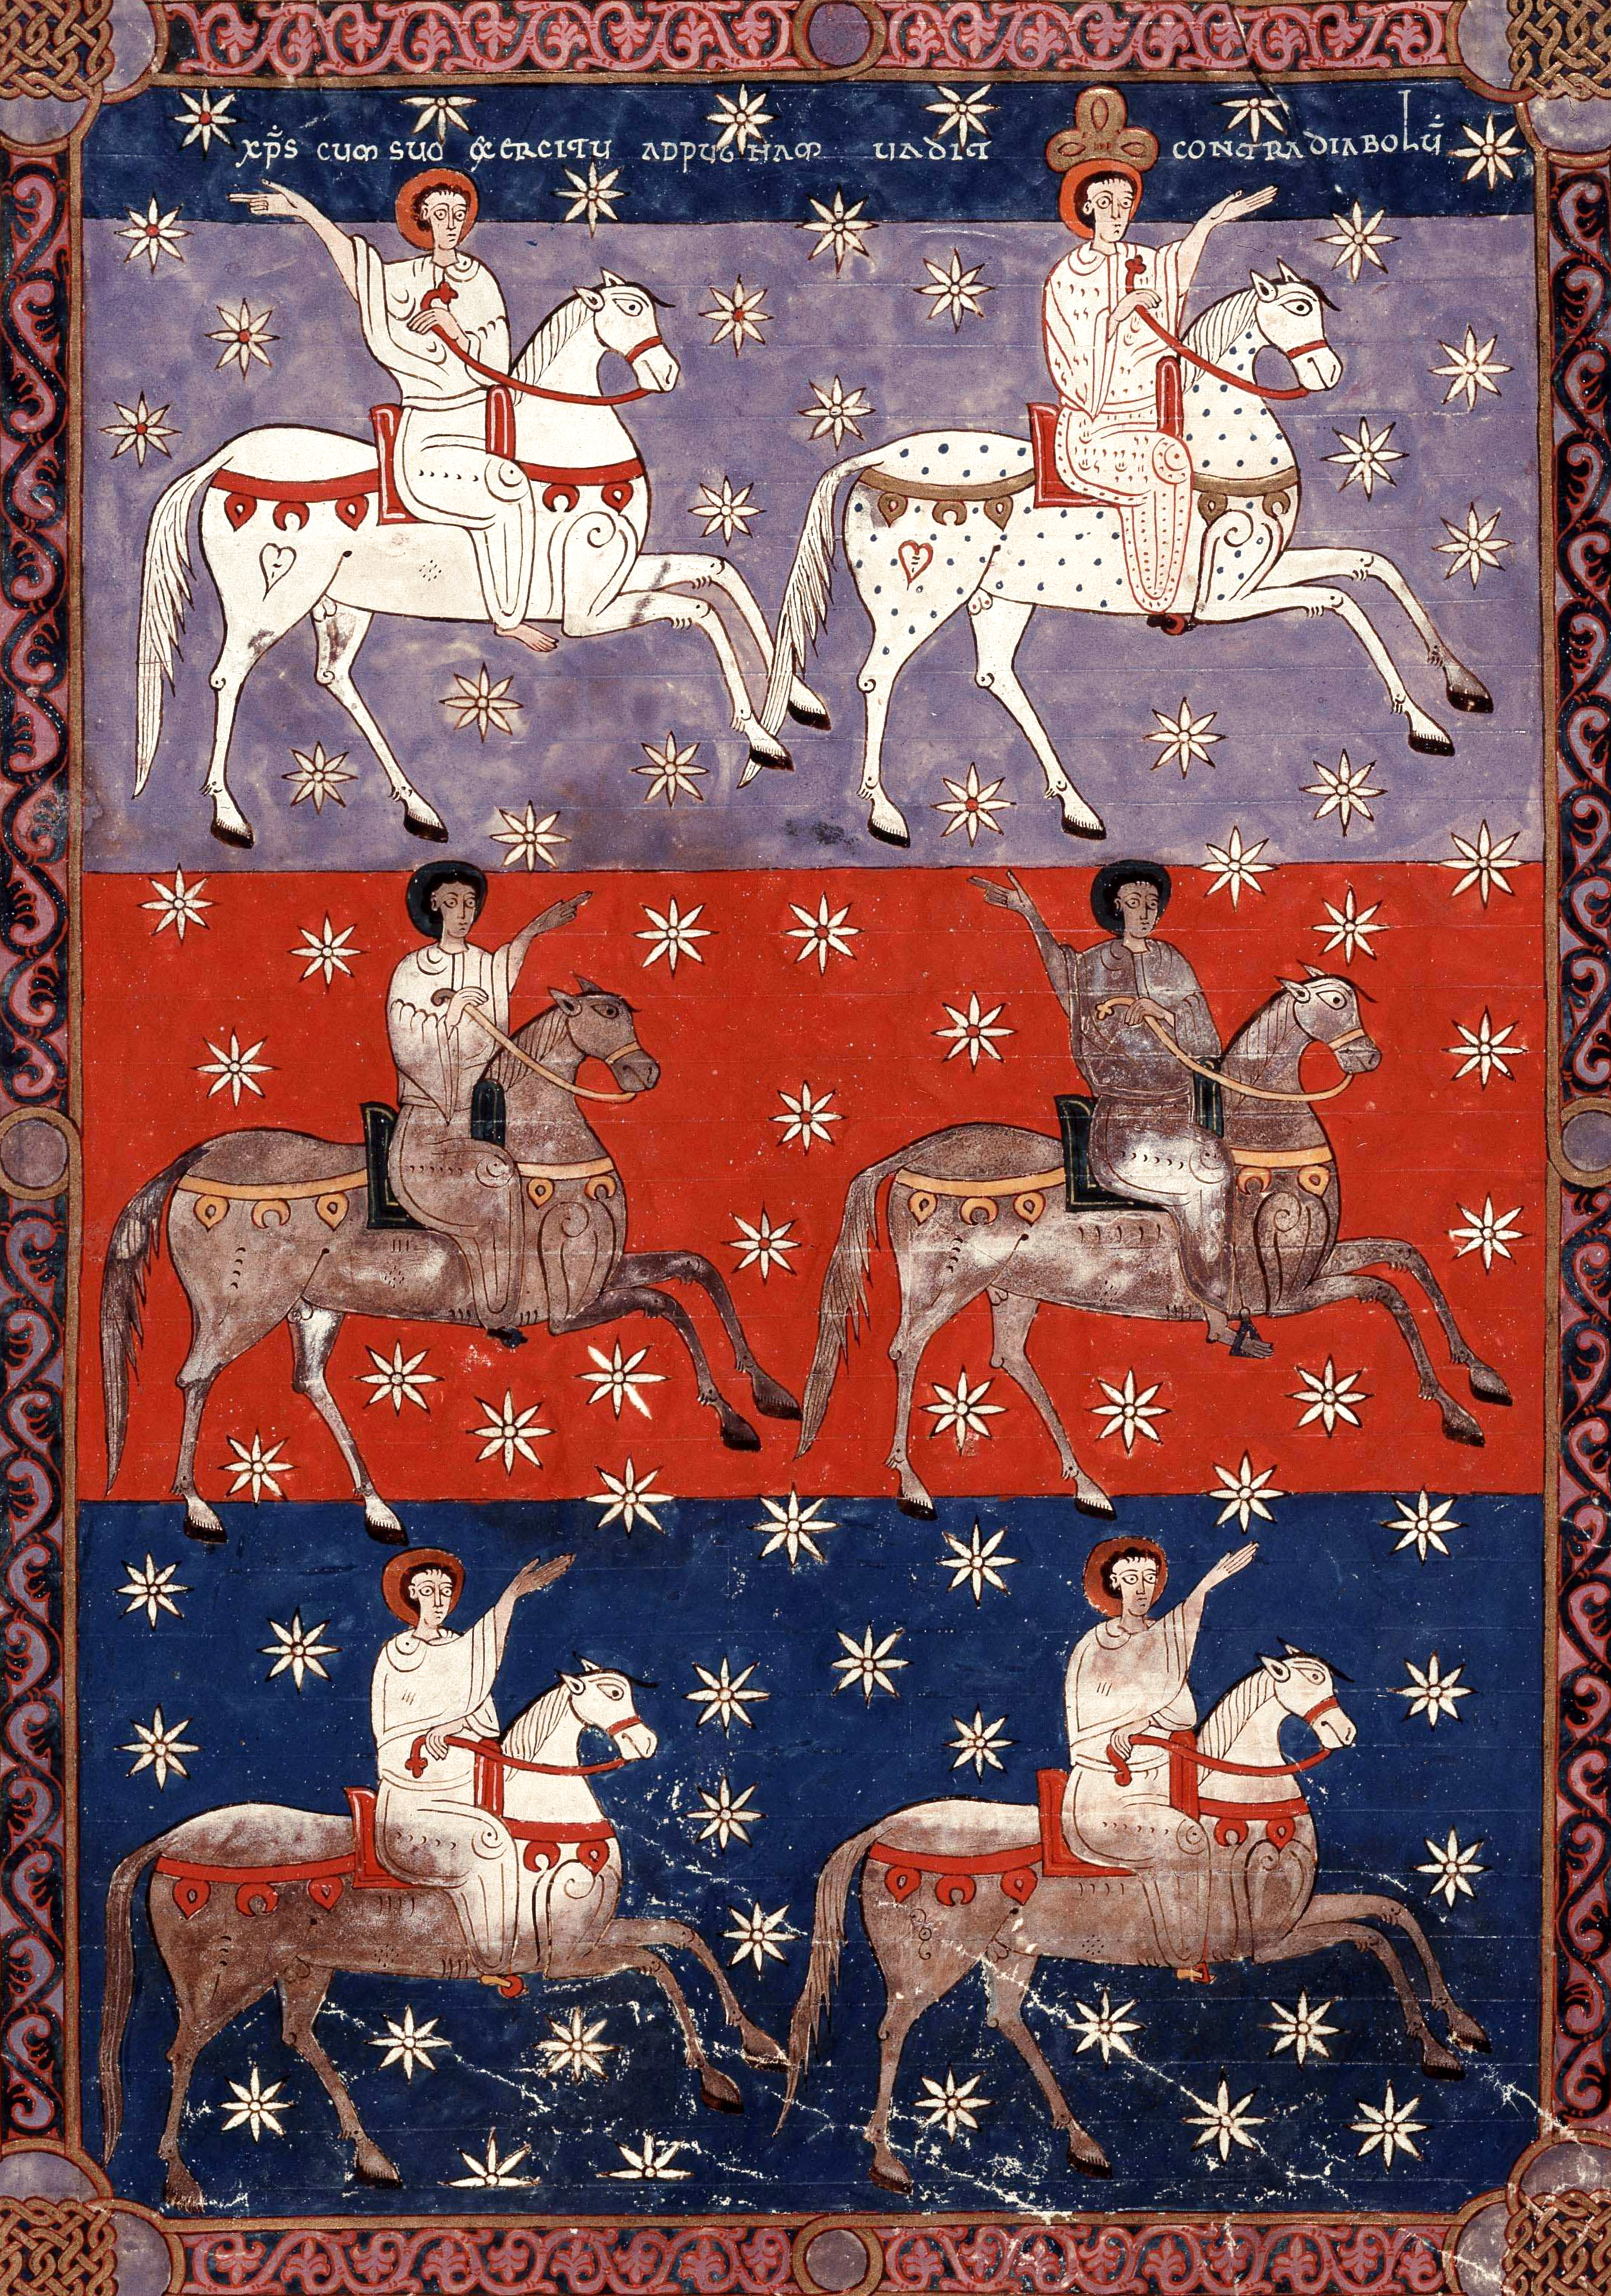 Beatus de Facundus, p. 480 – Le Fidèle et Véritable suivi par les armées du ciel (Ap 19, 11-16).